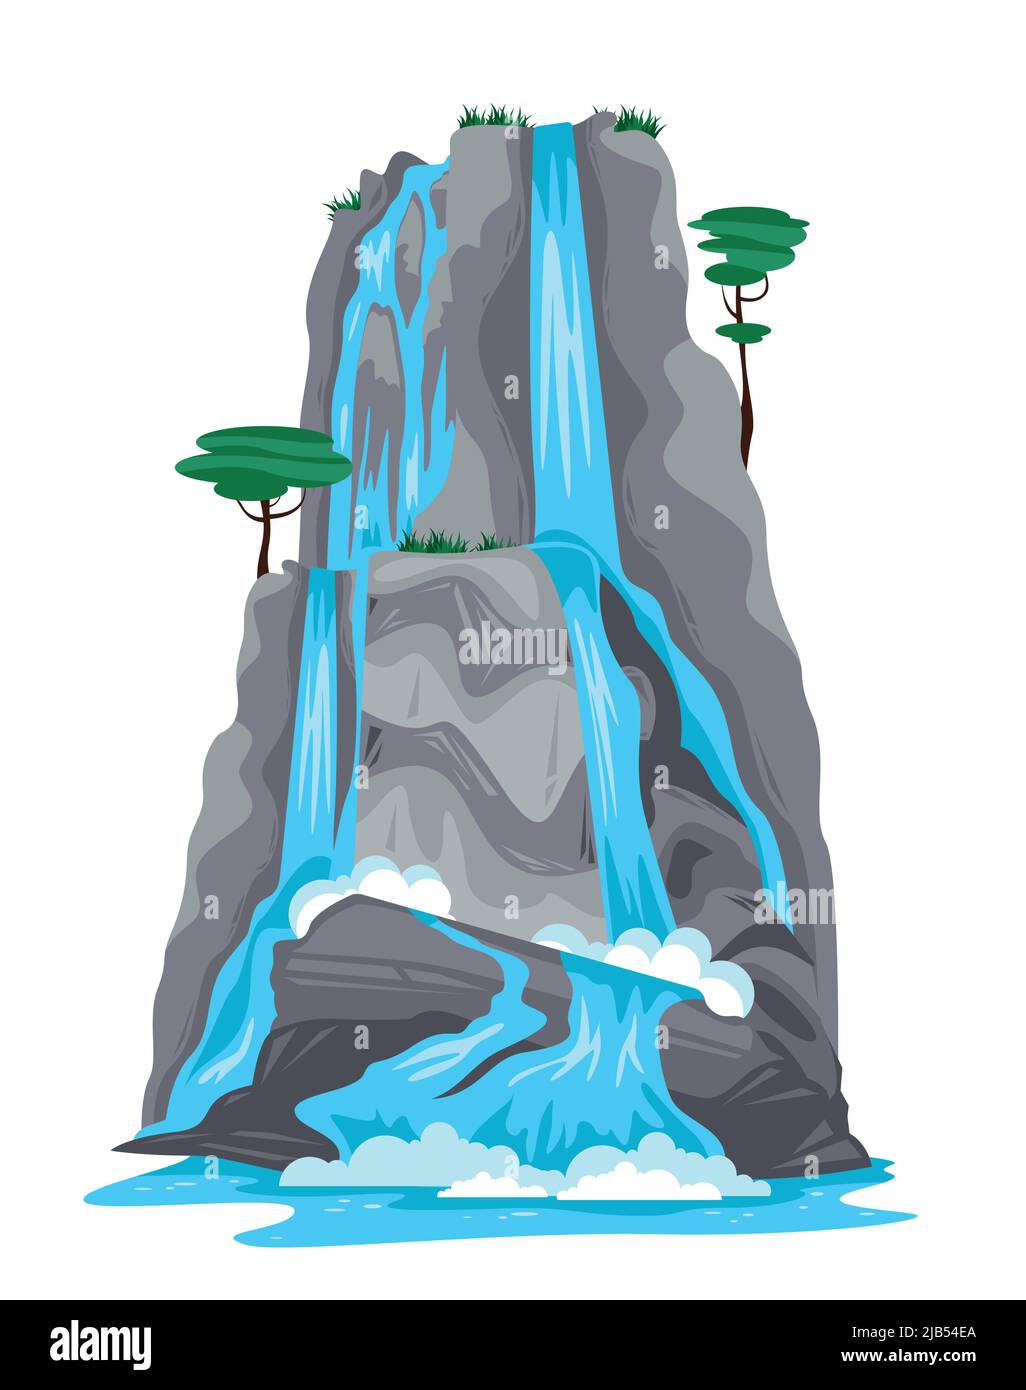 Natur Cartoon Objekt von Wasserfall fällt von der Spitze des Berges isoliert auf weißem Hintergrund Vektor-Illustration Stock Vektor